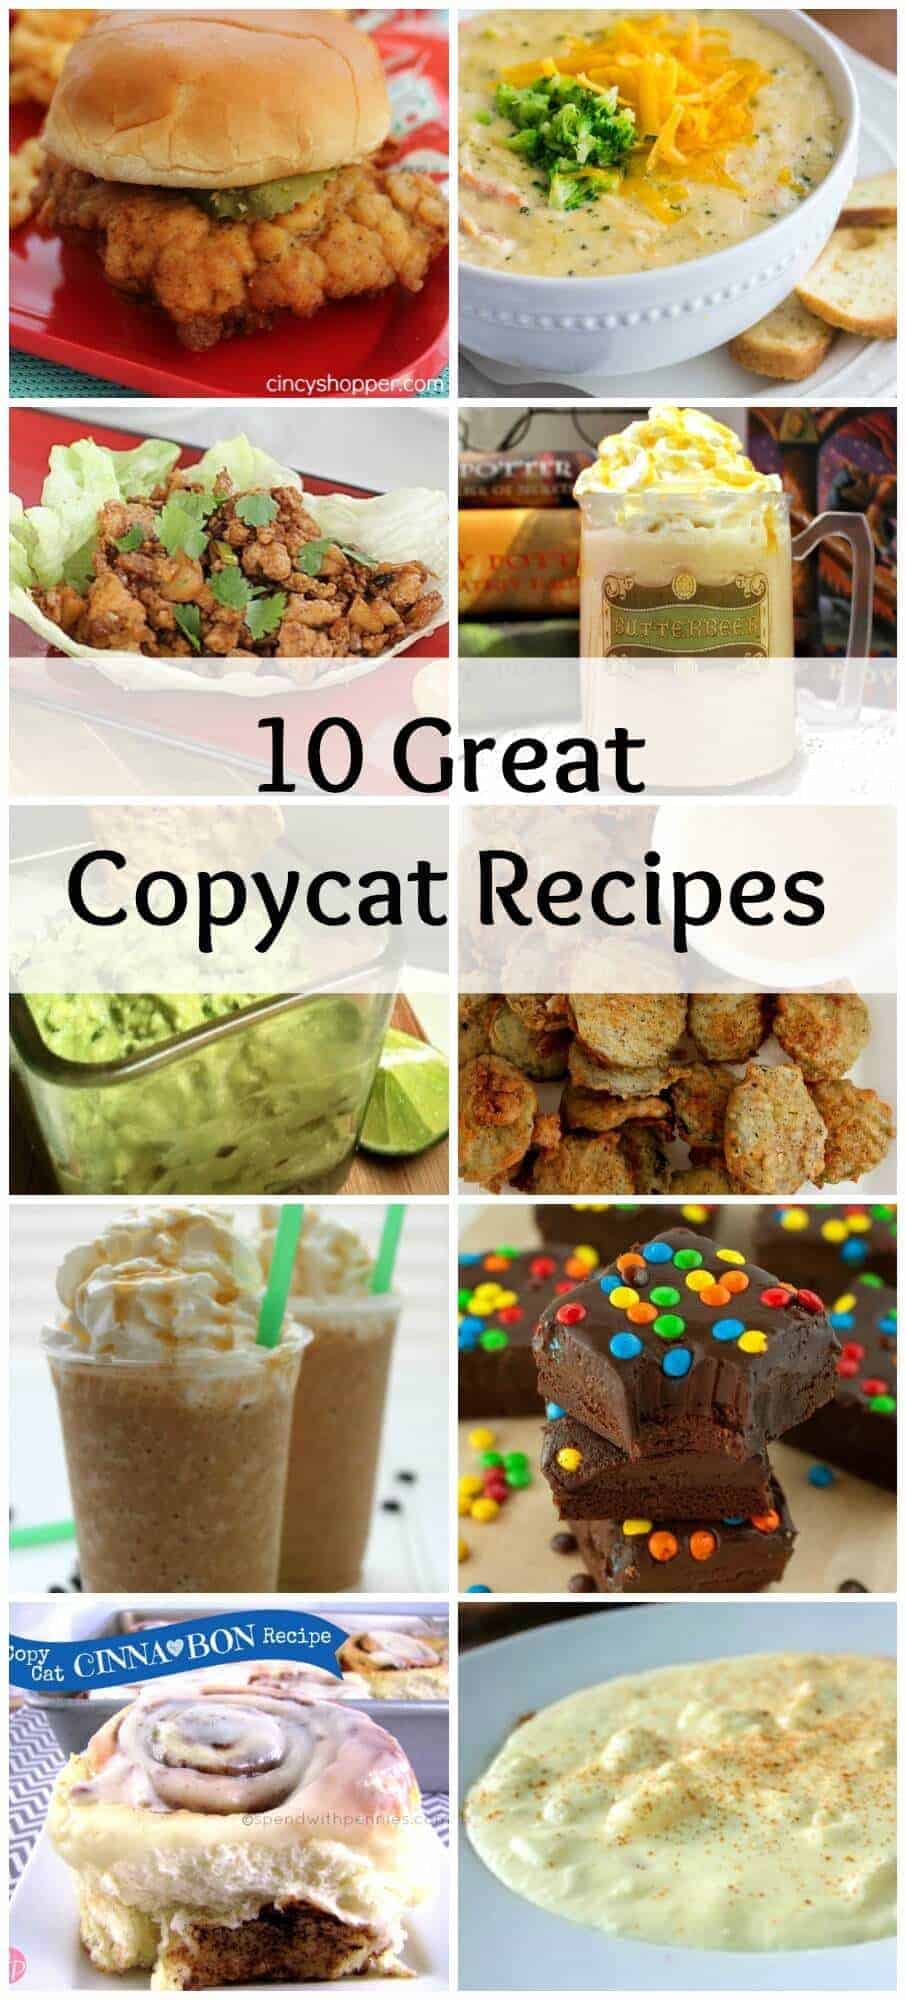 10 Great Copycat Recipes